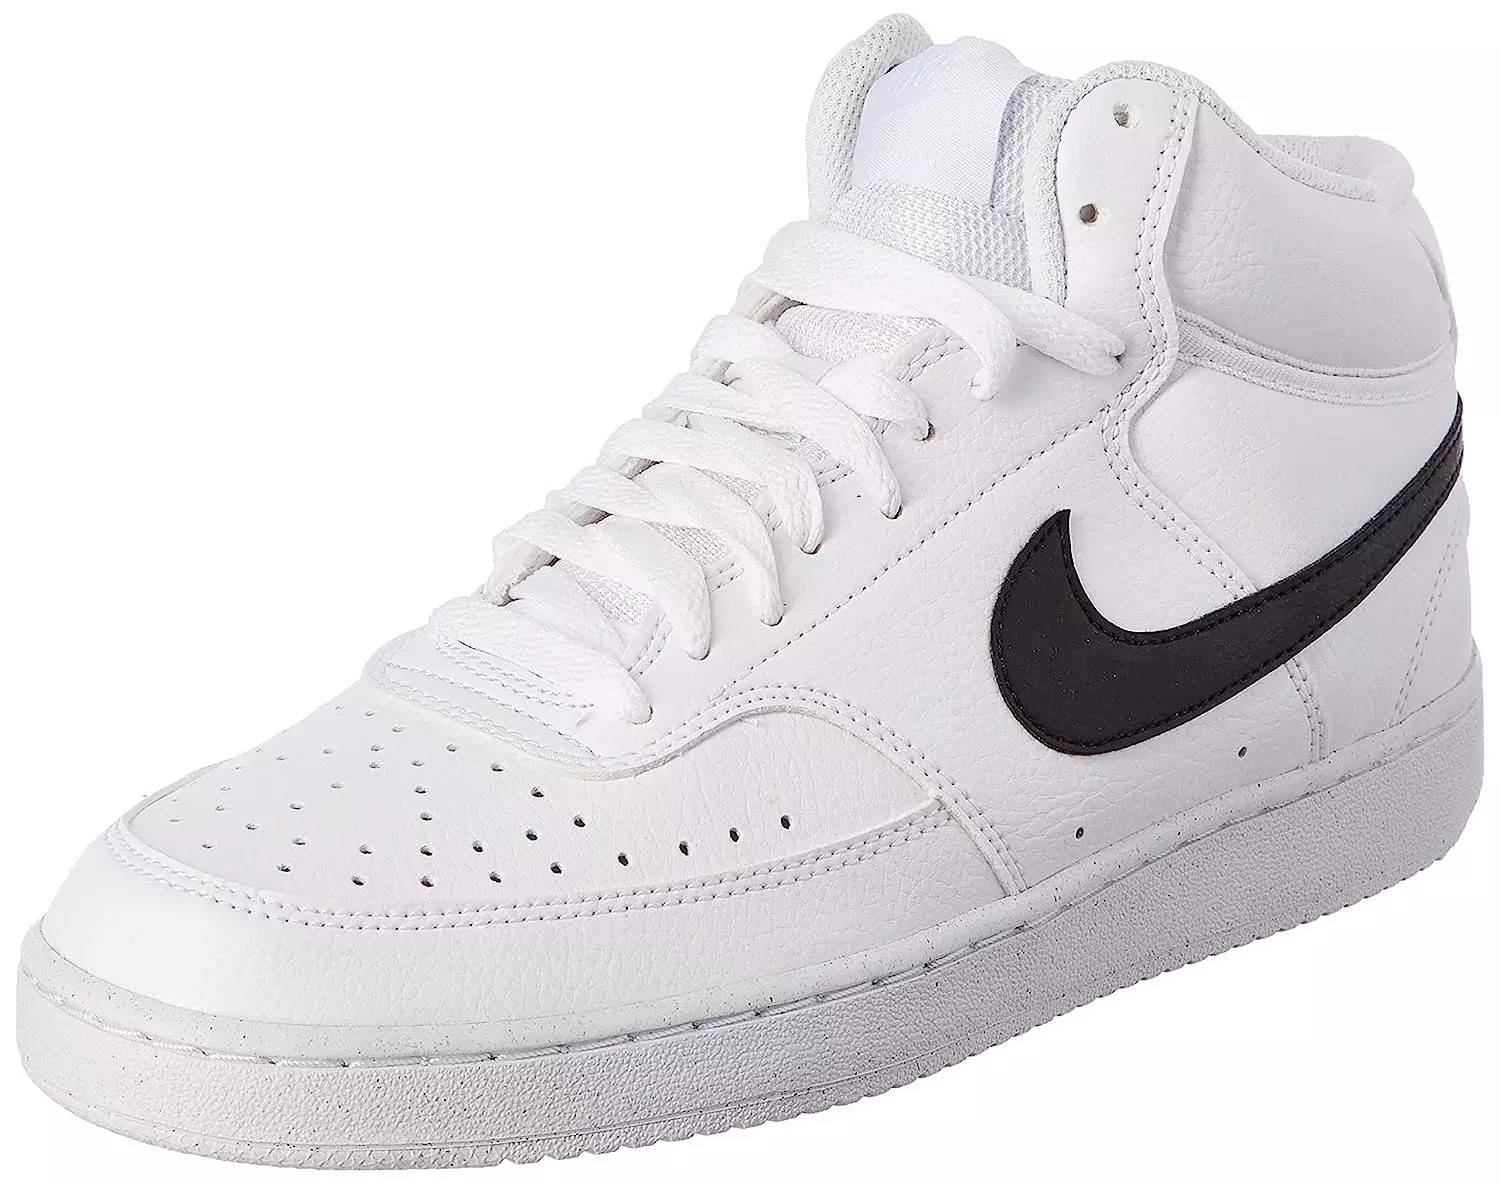 Nike Killshot OG Mens White Black Orange Shoe Trainer Sneaker All Sizes |  eBay-baongoctrading.com.vn